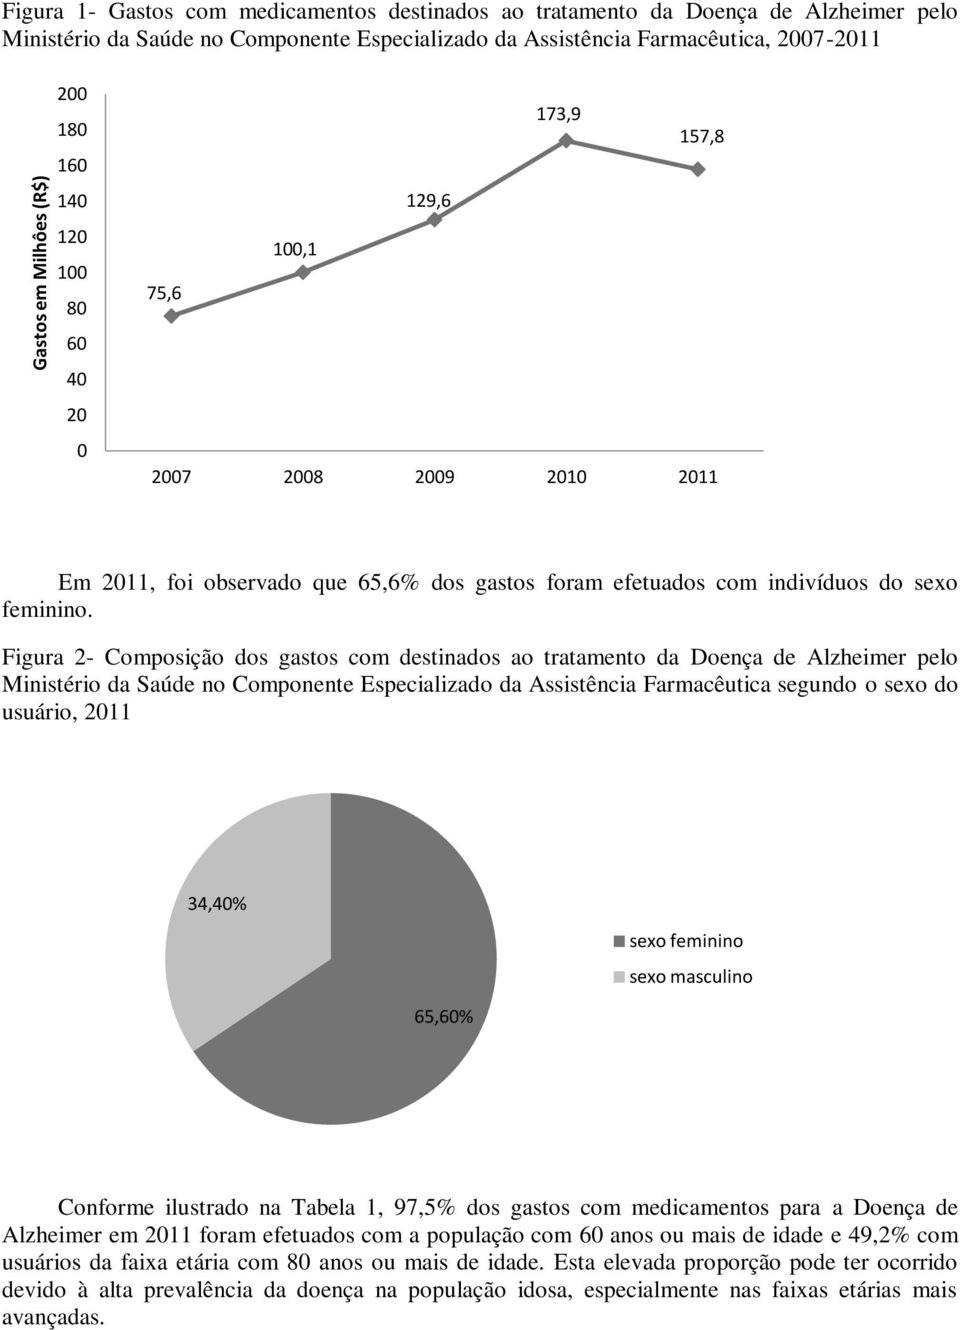 Figura 2- Composição dos gastos com destinados ao tratamento da Doença de Alzheimer pelo Ministério da Saúde no Componente Especializado da Assistência Farmacêutica segundo o sexo do usuário, 2011